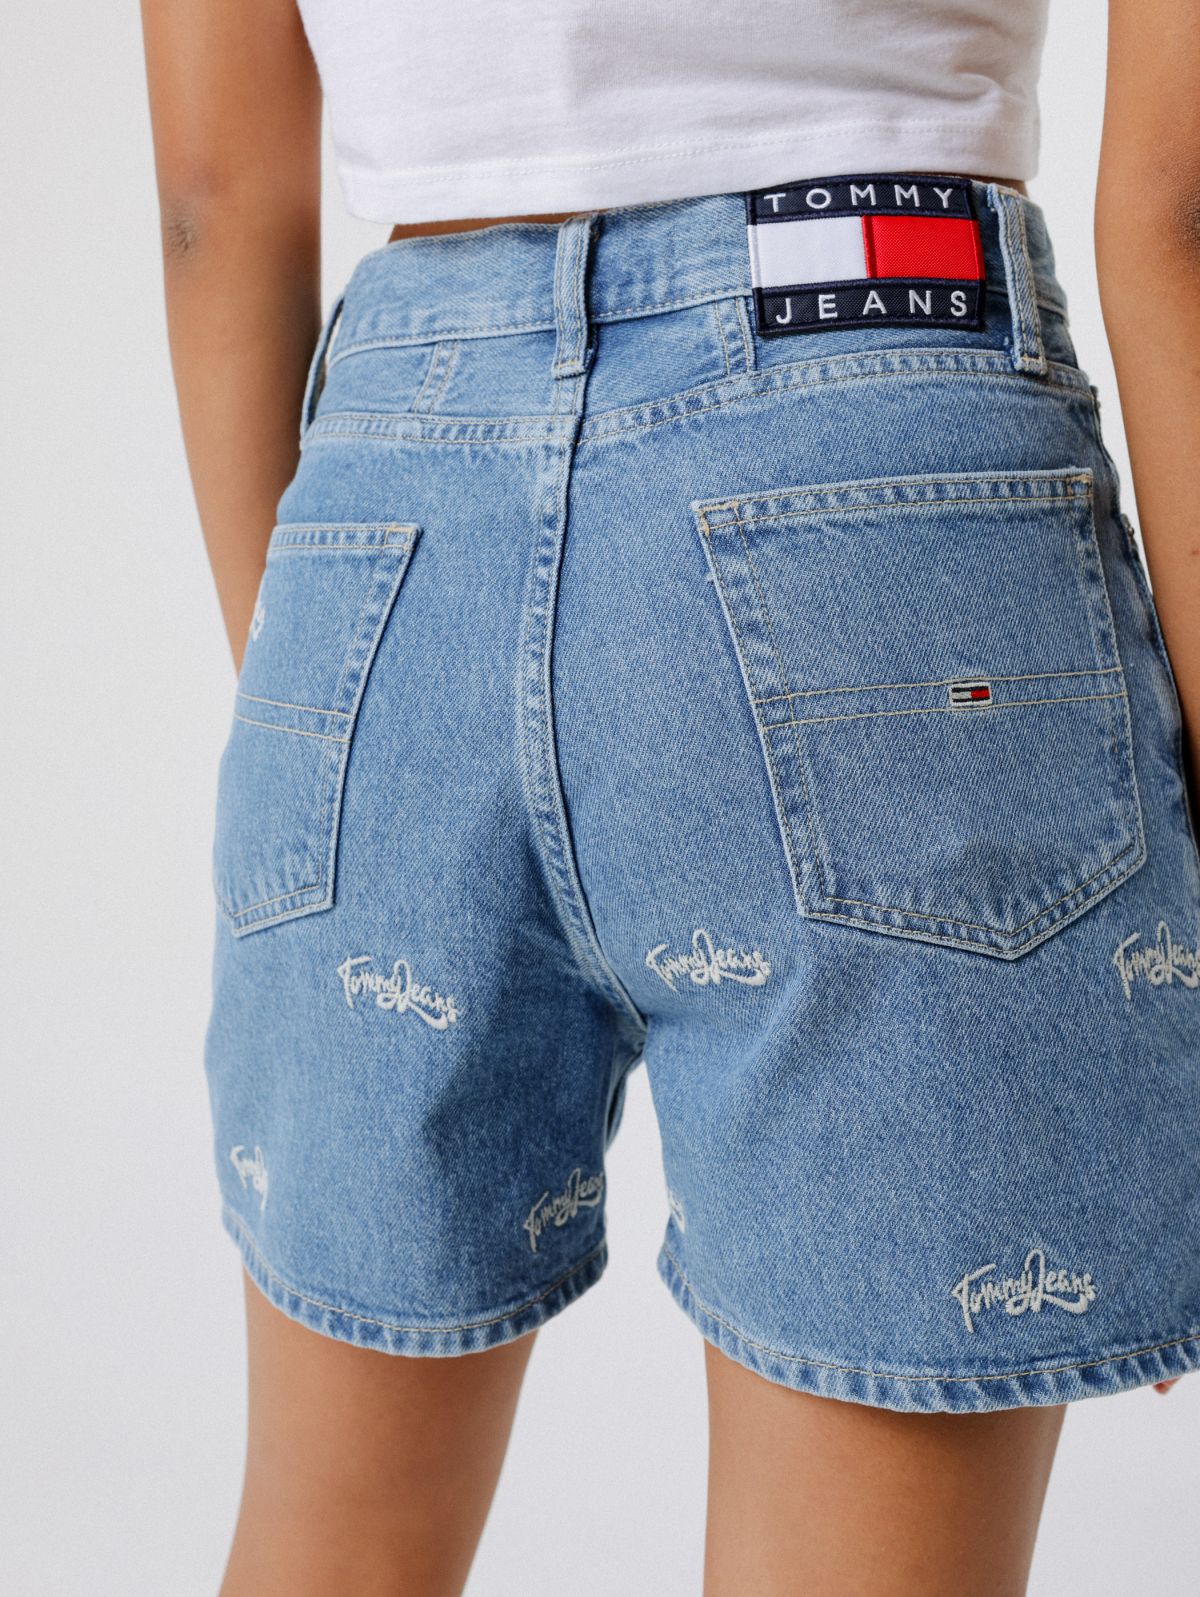  ג'ינס קצר עם רקמת לוגו של TOMMY HILFIGER